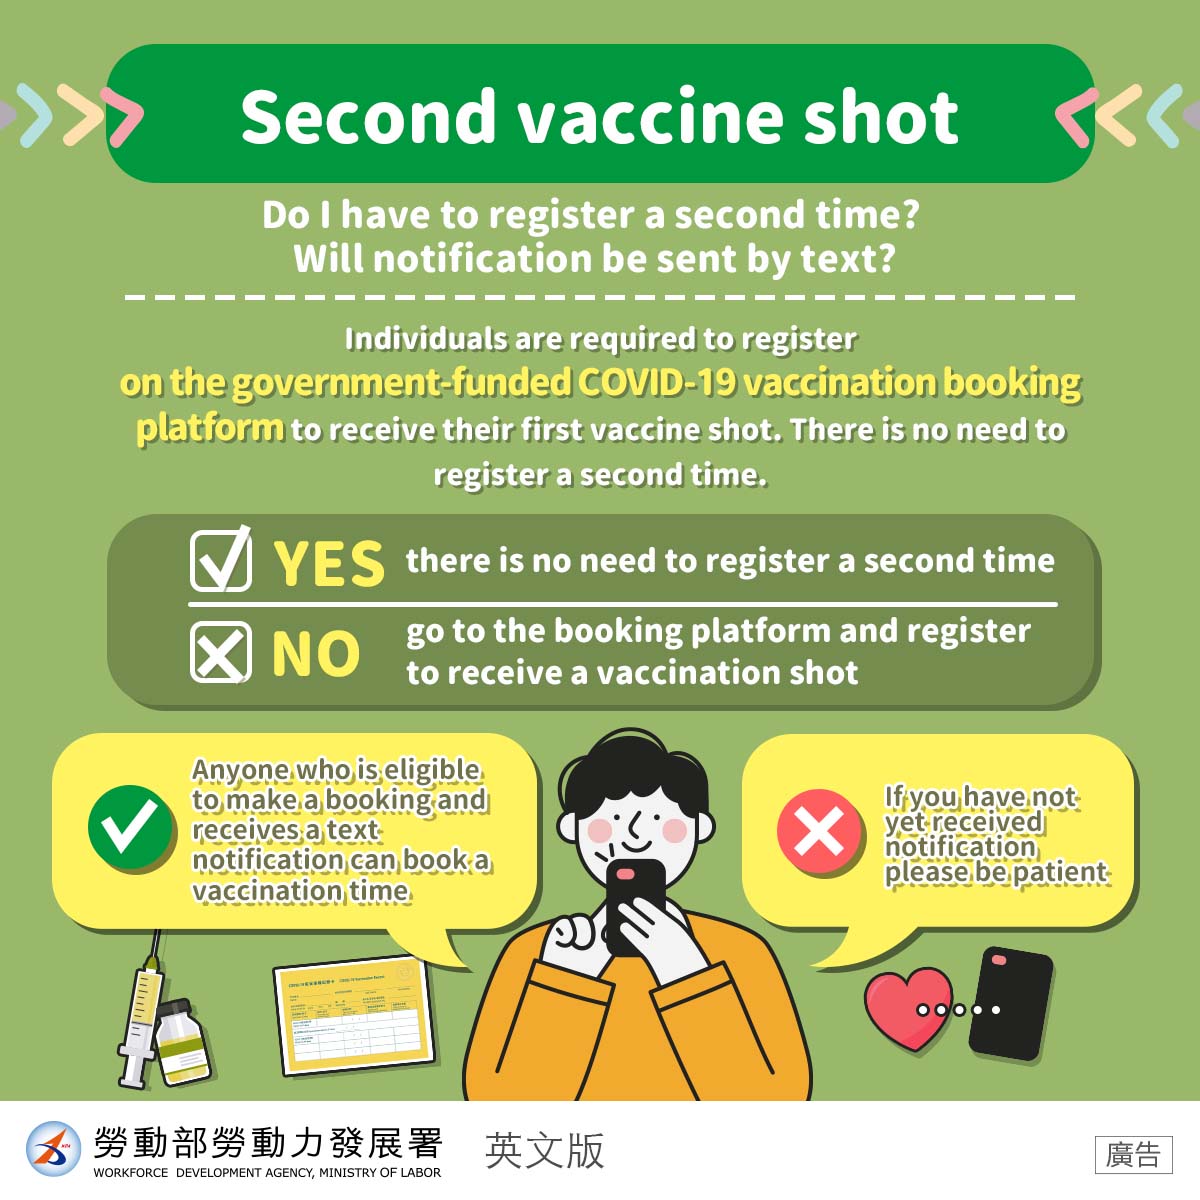 防疫生活-【第二劑疫苗】-英文.jpg